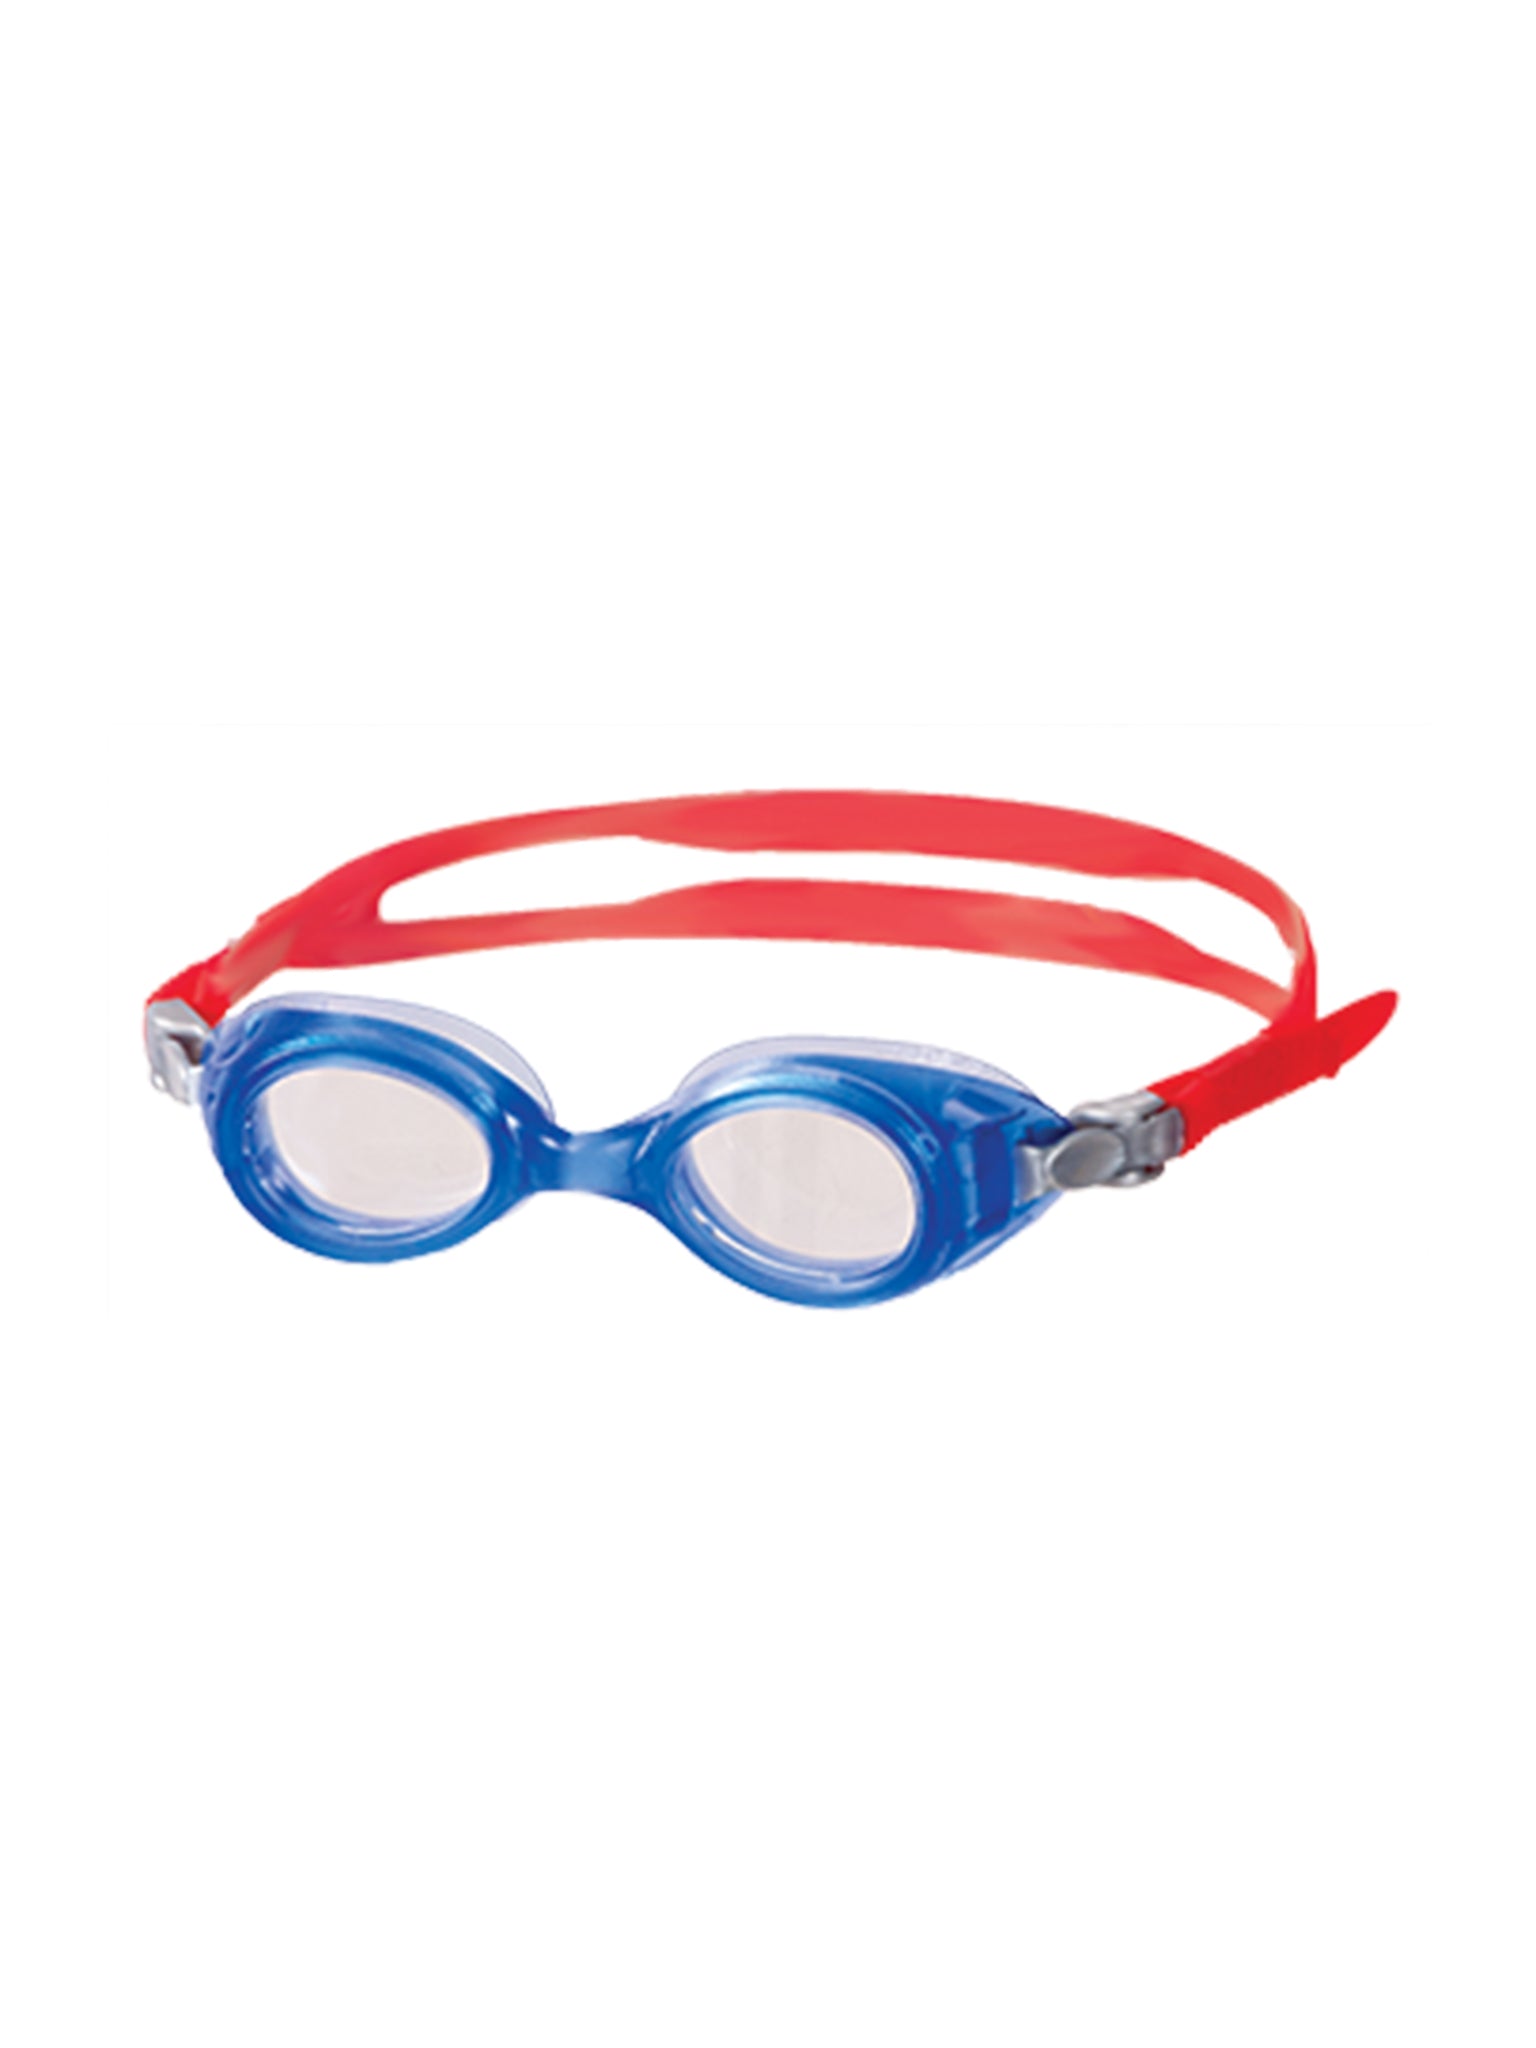 Junior Hero Swim Goggles - Blue/Red